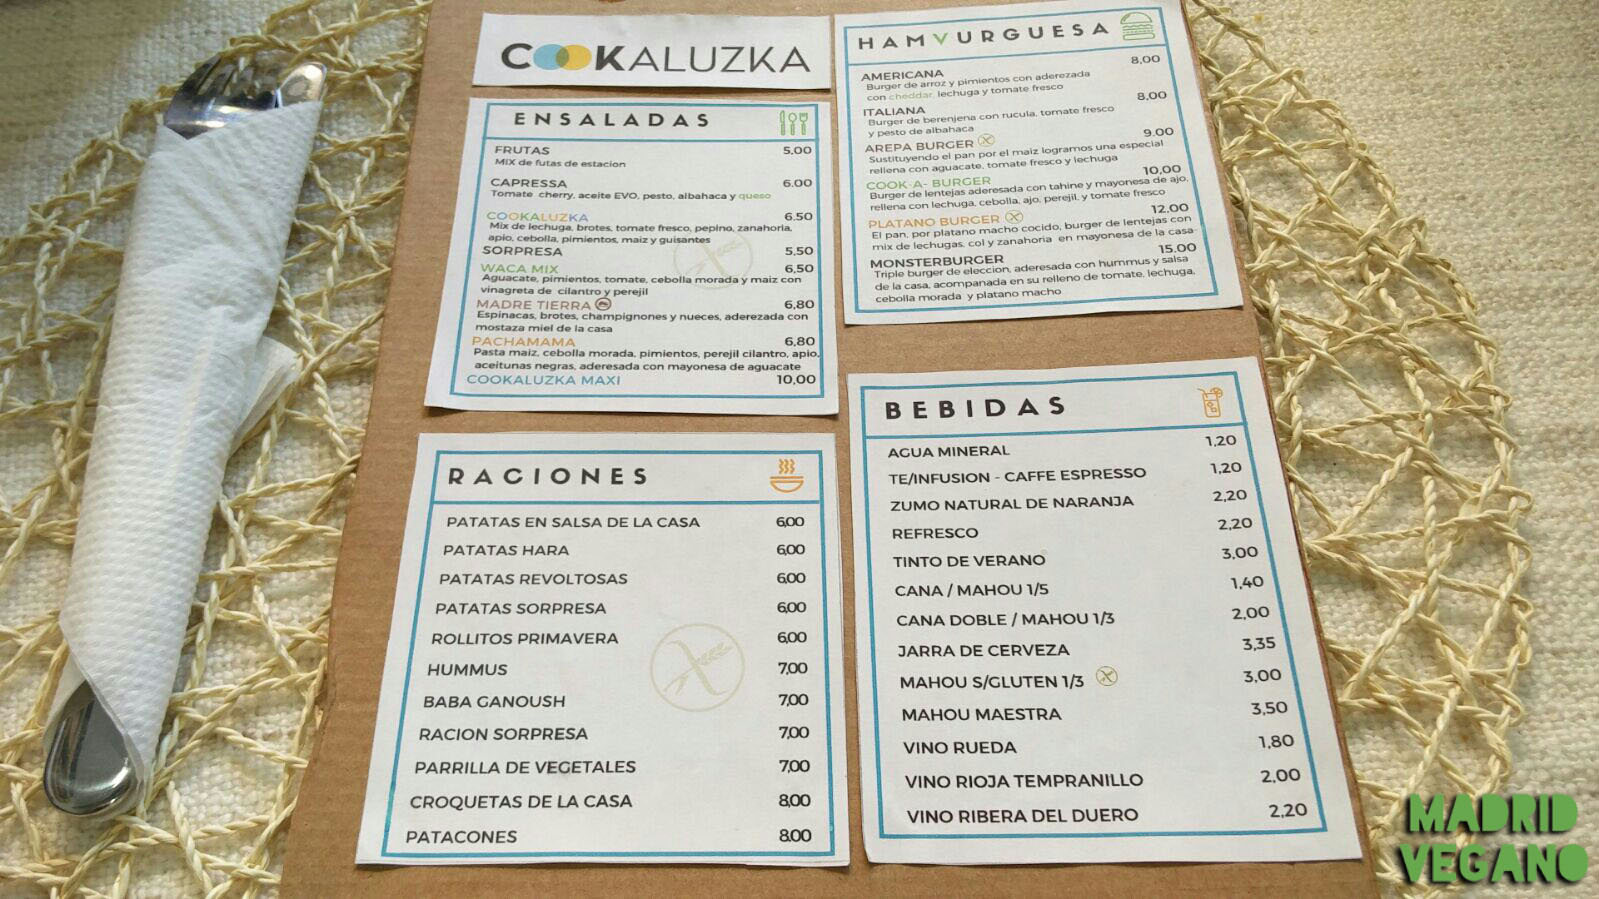 Cookaluzka, cocina vegana con un toque venezolano en Madrid